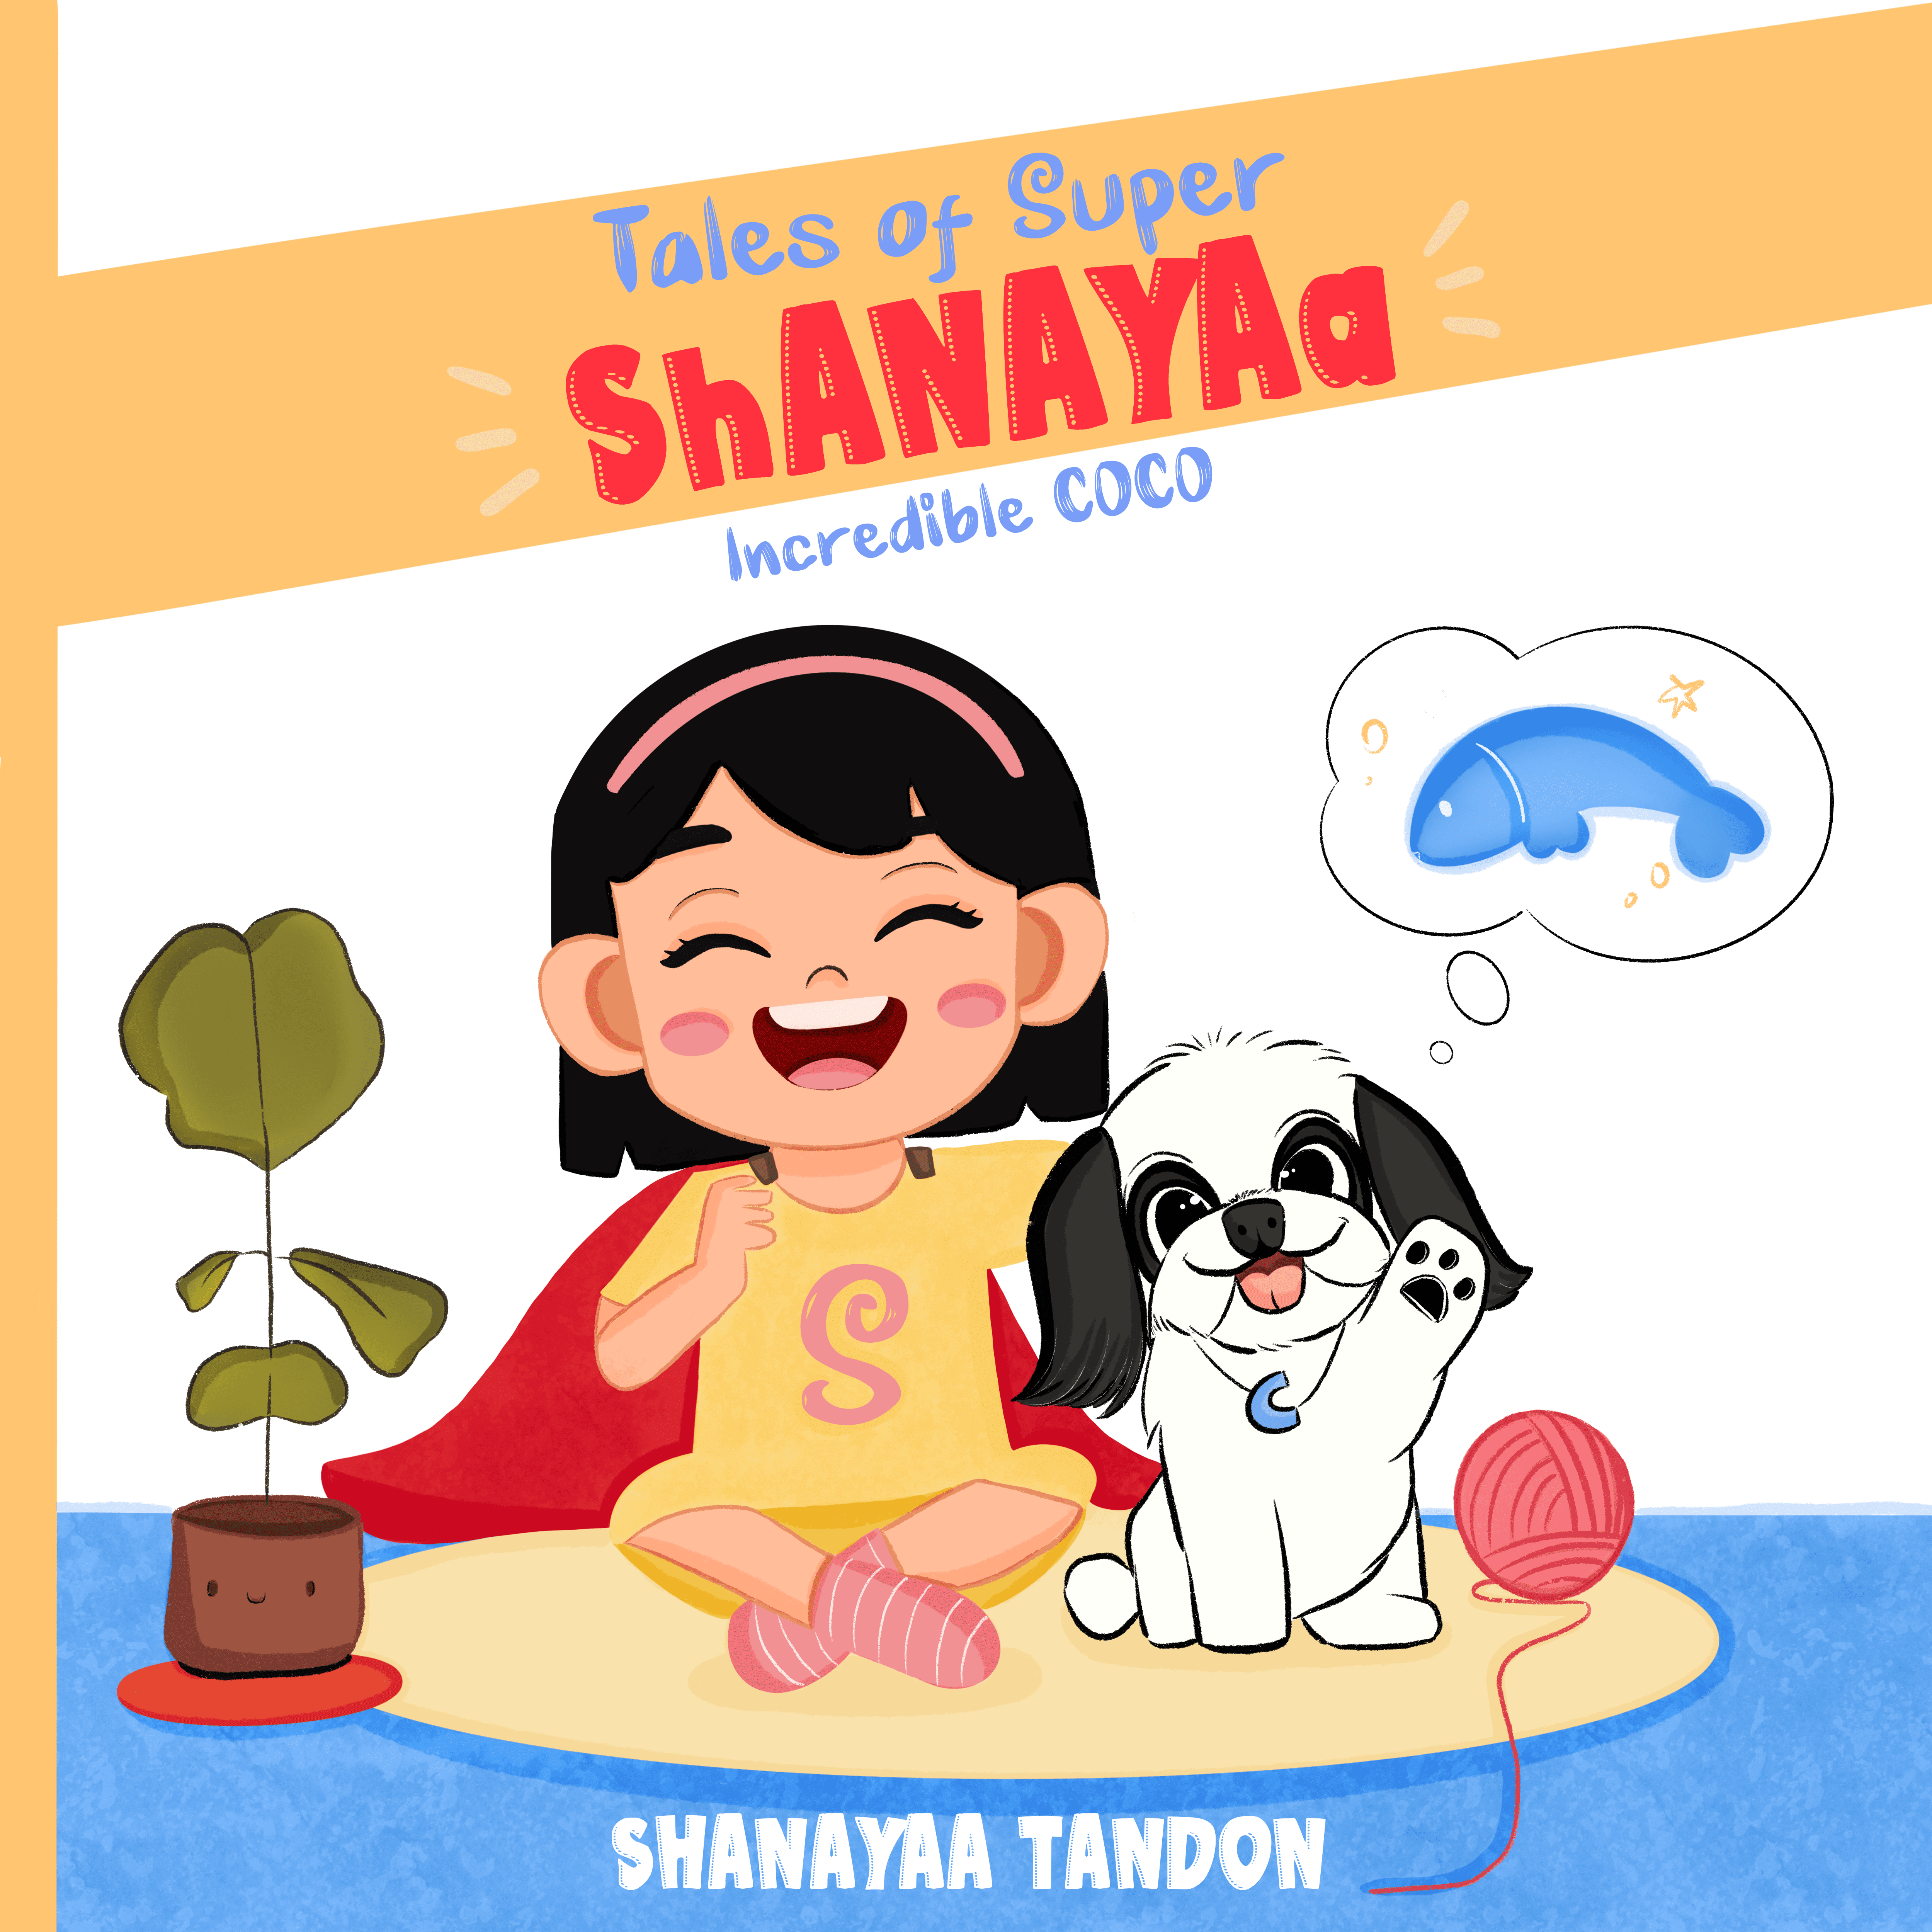 Tales of super shanayaa, incredible coco